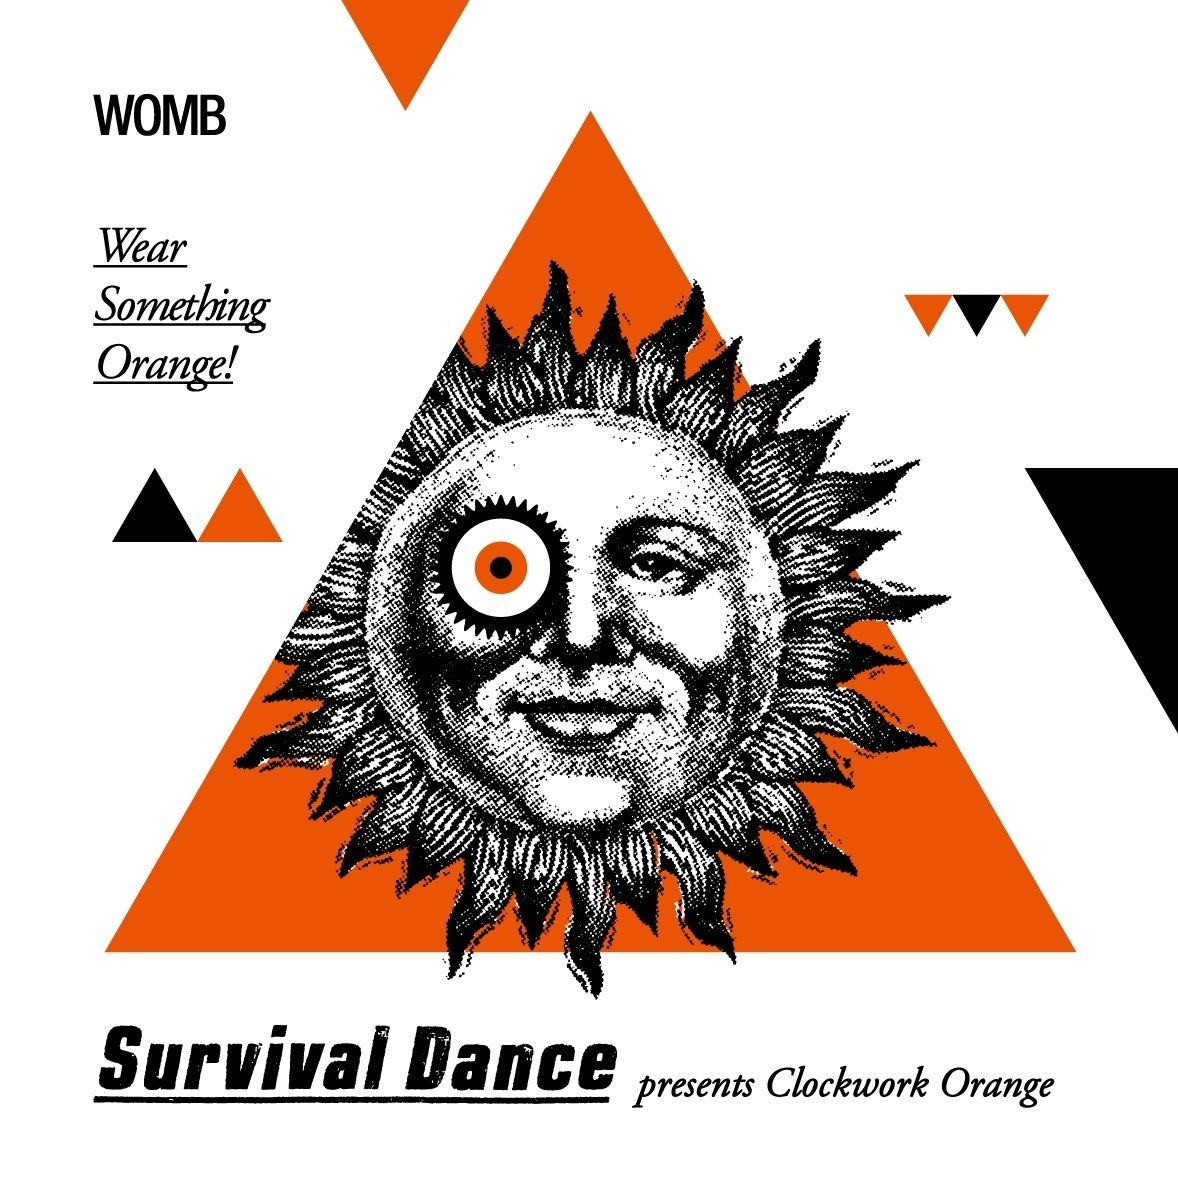 SURVIVAL DANCE presents Clockwork Orange